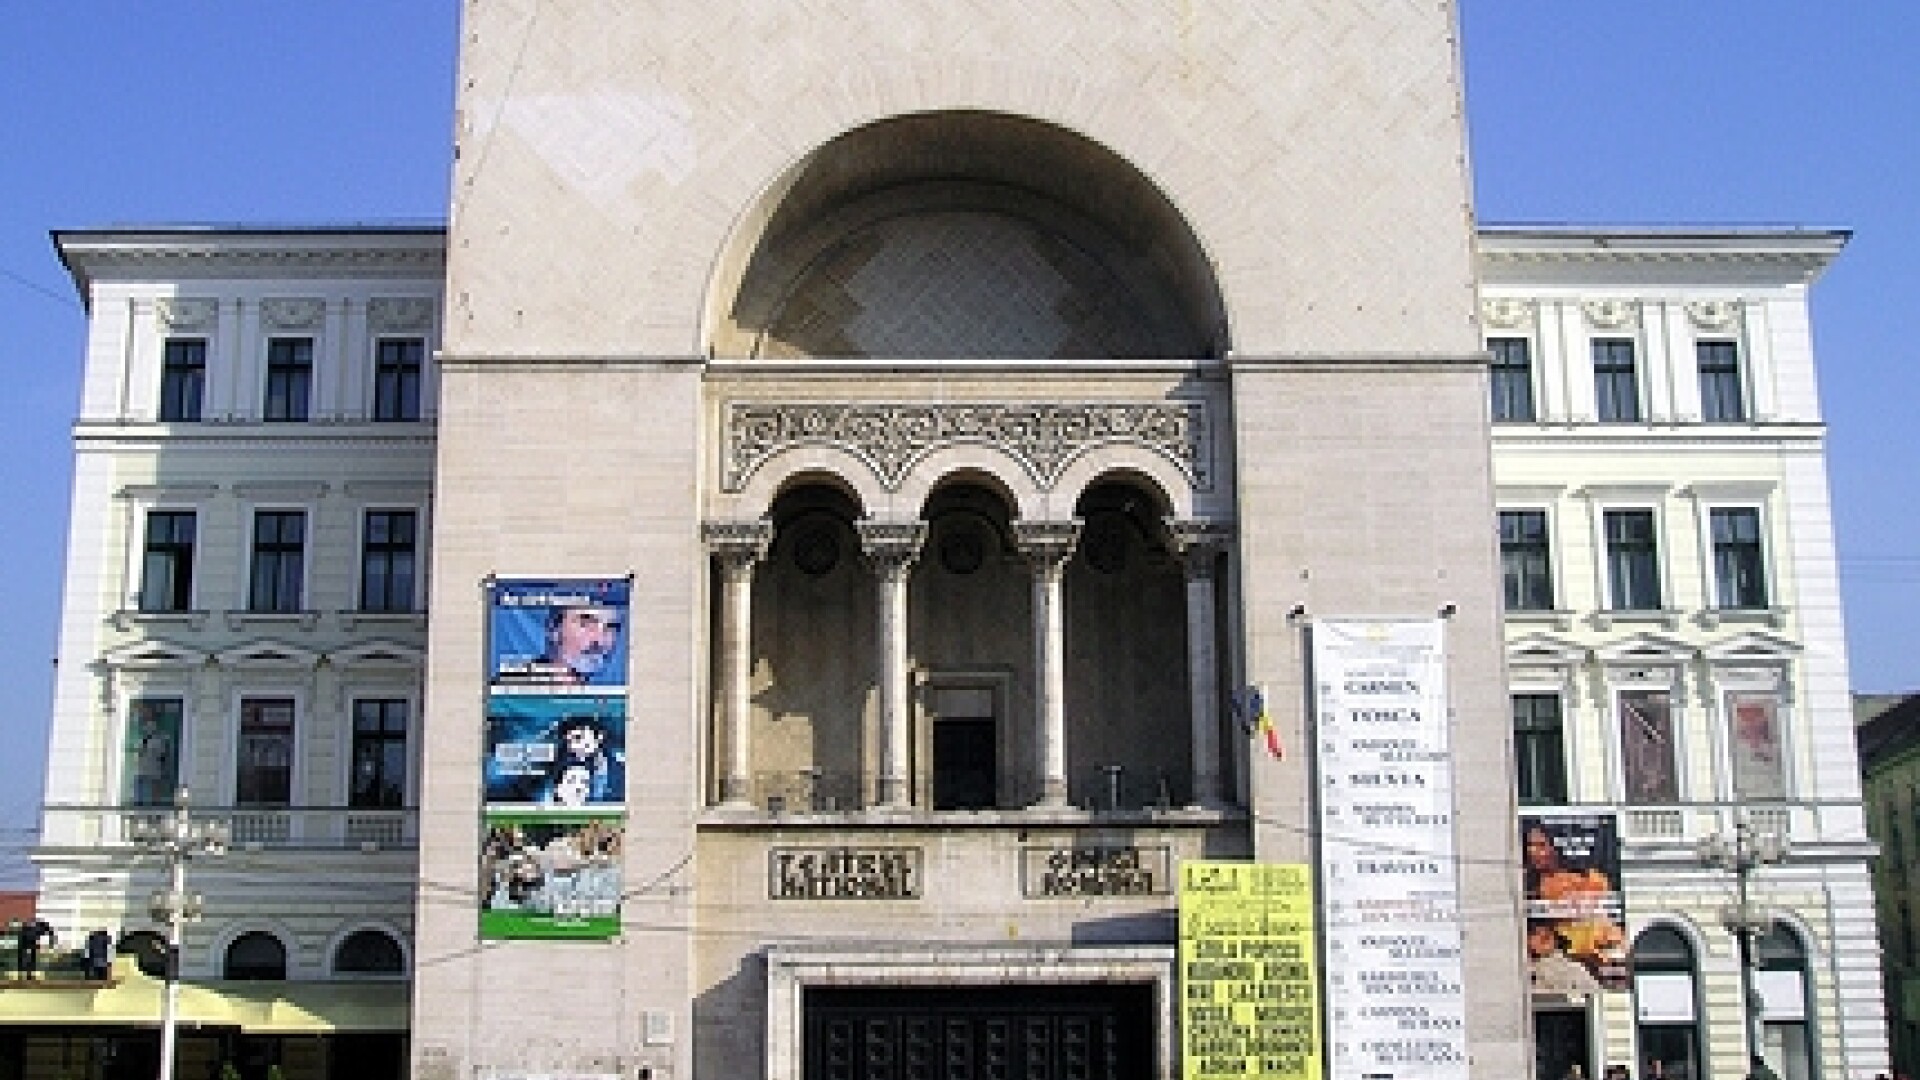 Teatrul Mihai Eminescu din Timisoara